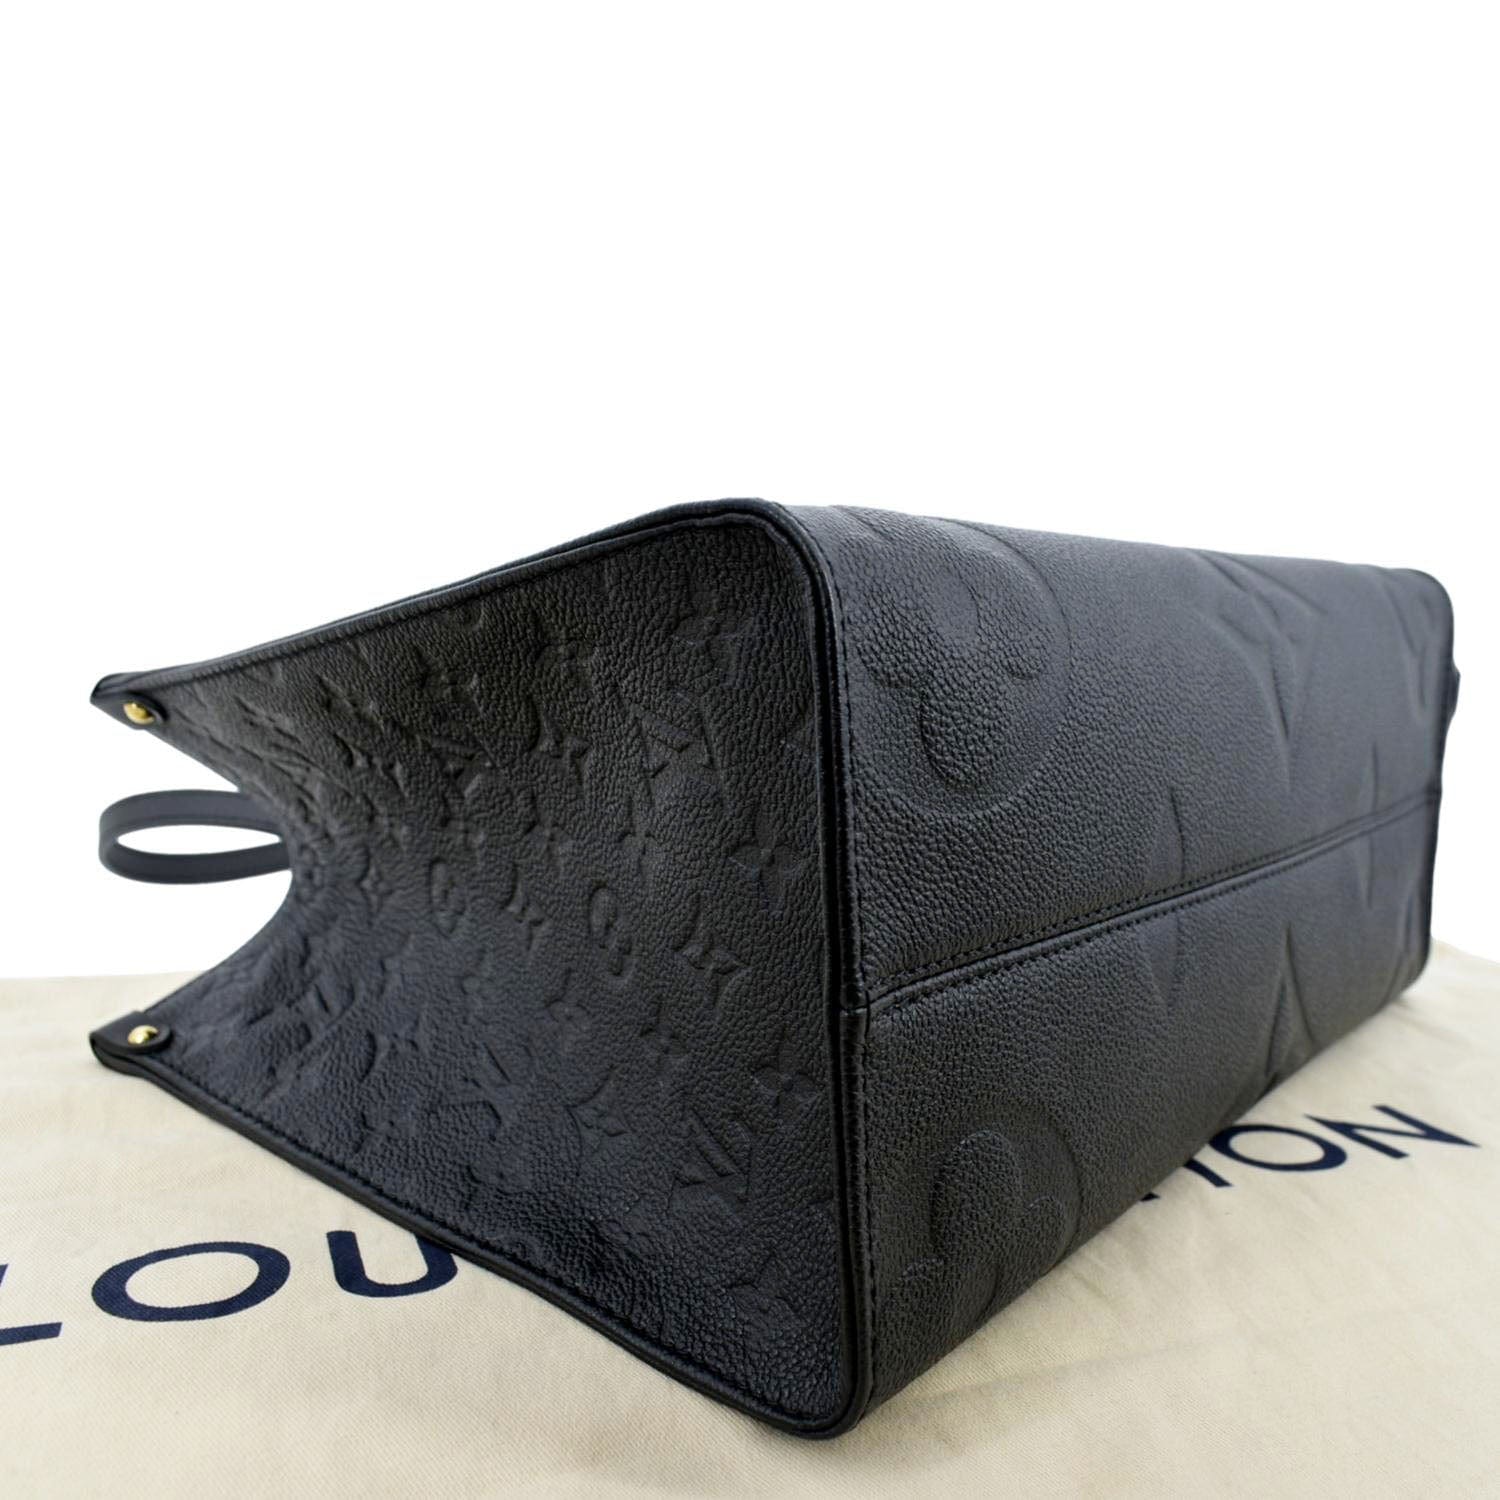 Black Louis Vuitton Empreinte Monogram Giant Onthego MM totes